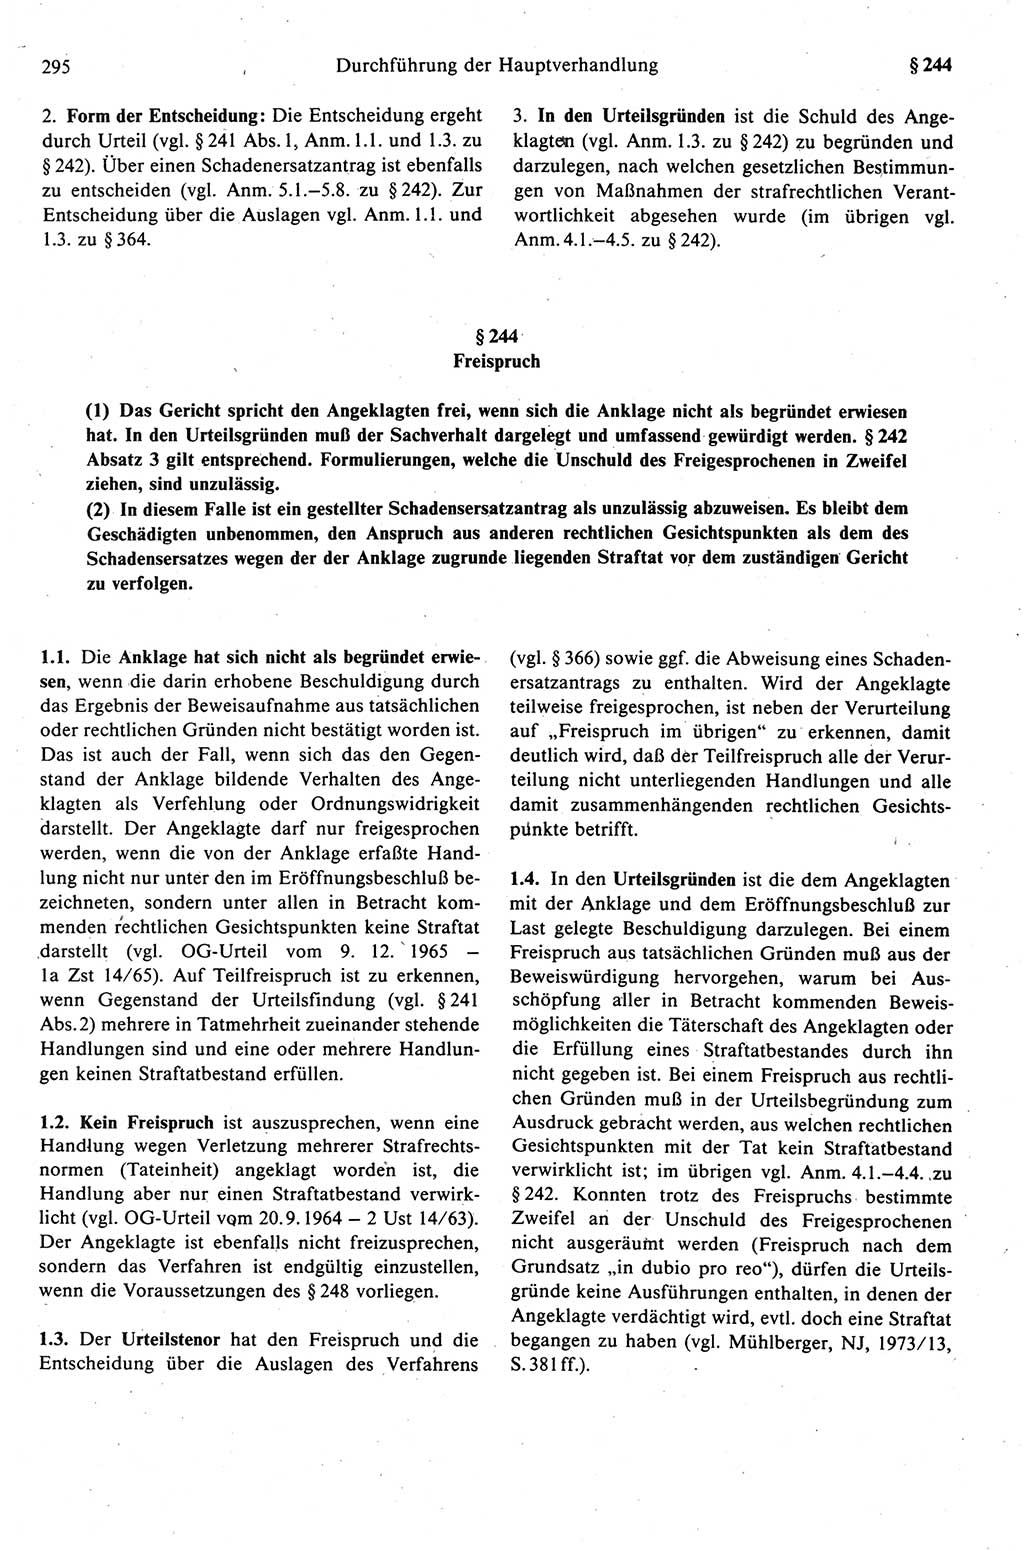 Strafprozeßrecht der DDR (Deutsche Demokratische Republik), Kommentar zur Strafprozeßordnung (StPO) 1989, Seite 295 (Strafprozeßr. DDR Komm. StPO 1989, S. 295)